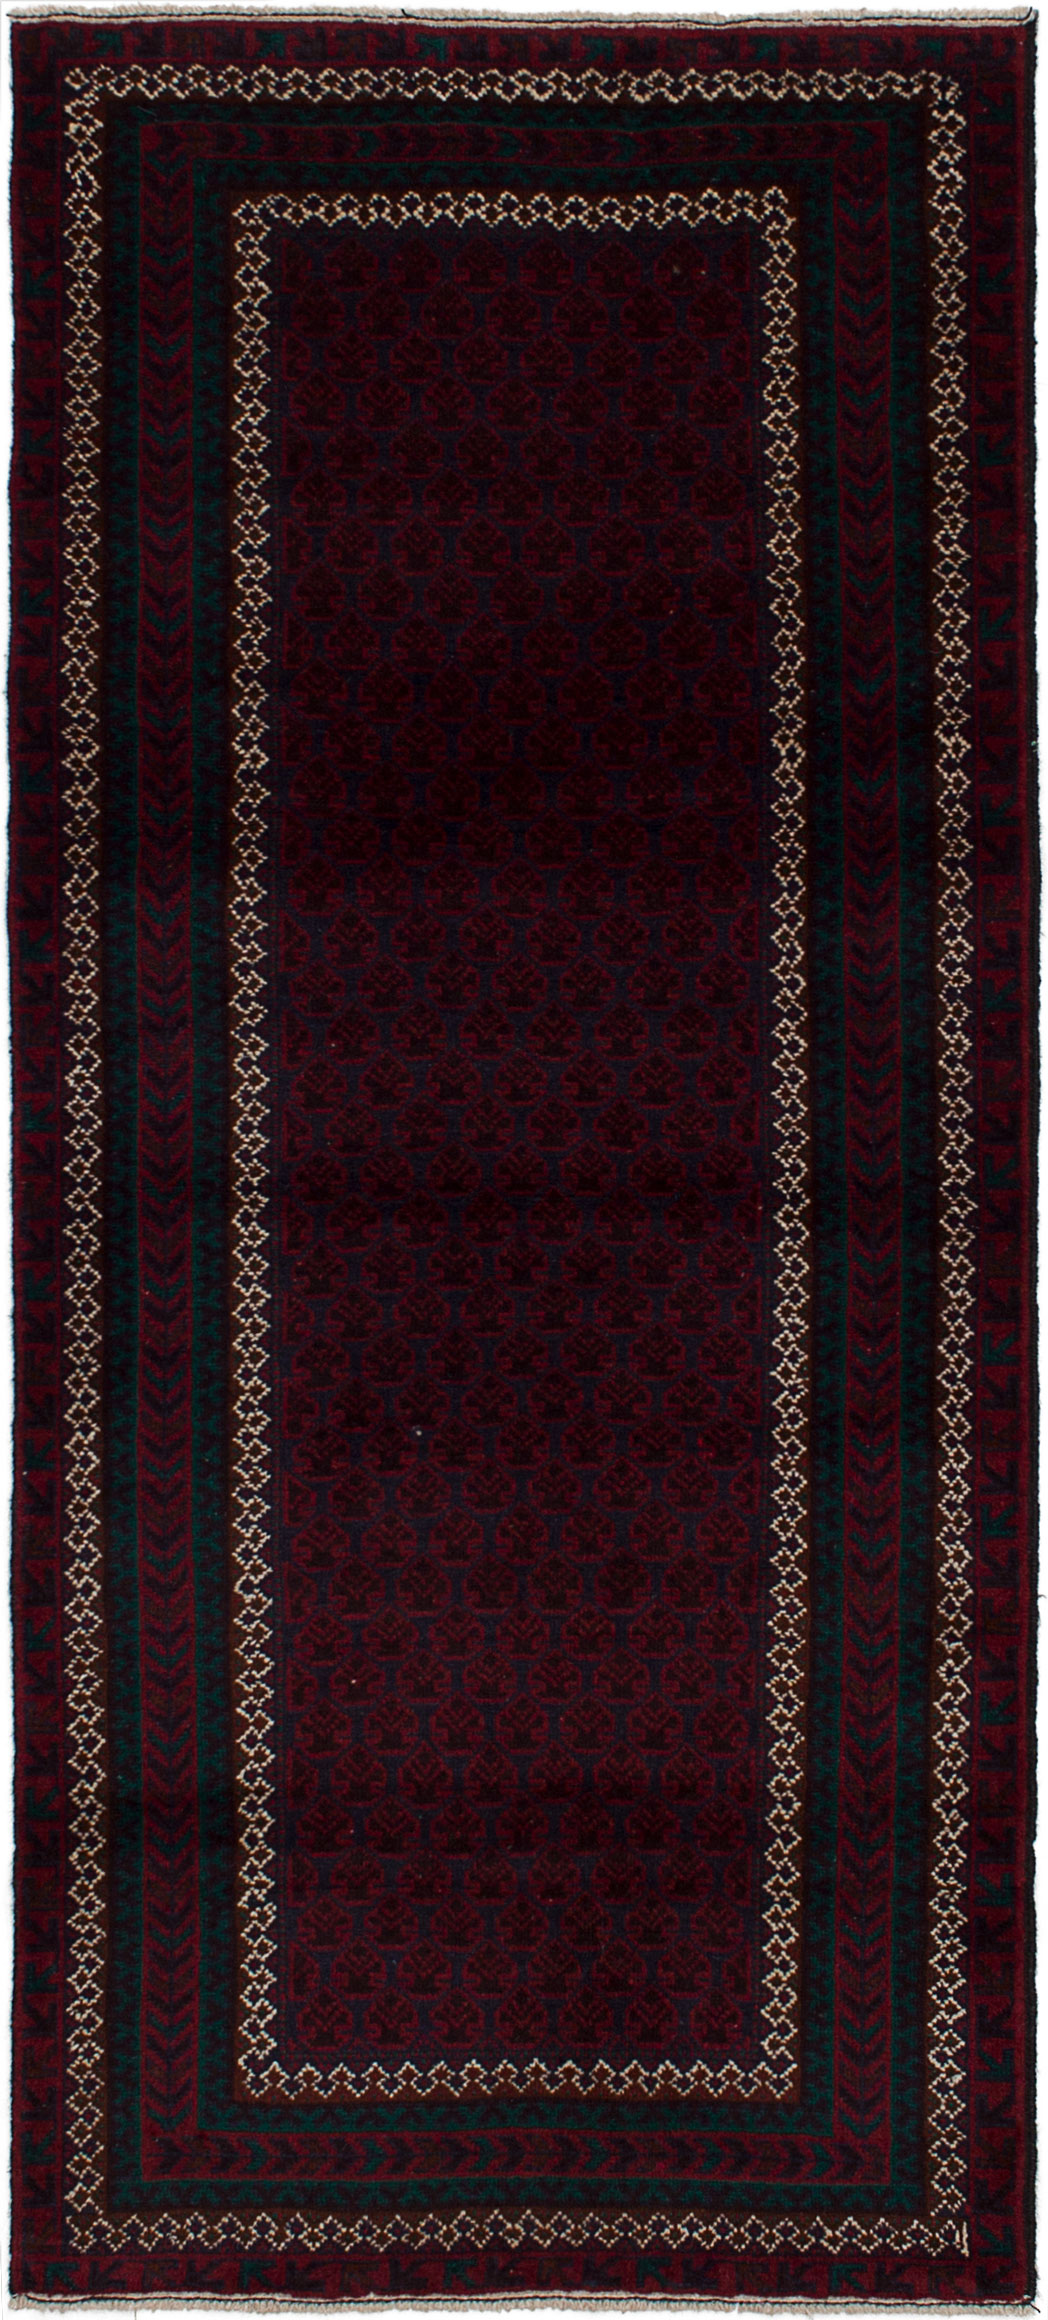 Hand-knotted Finest Rizbaft Dark Navy, Dark Red Wool Rug 2'8" x 6'0" Size: 2'8" x 6'0"  